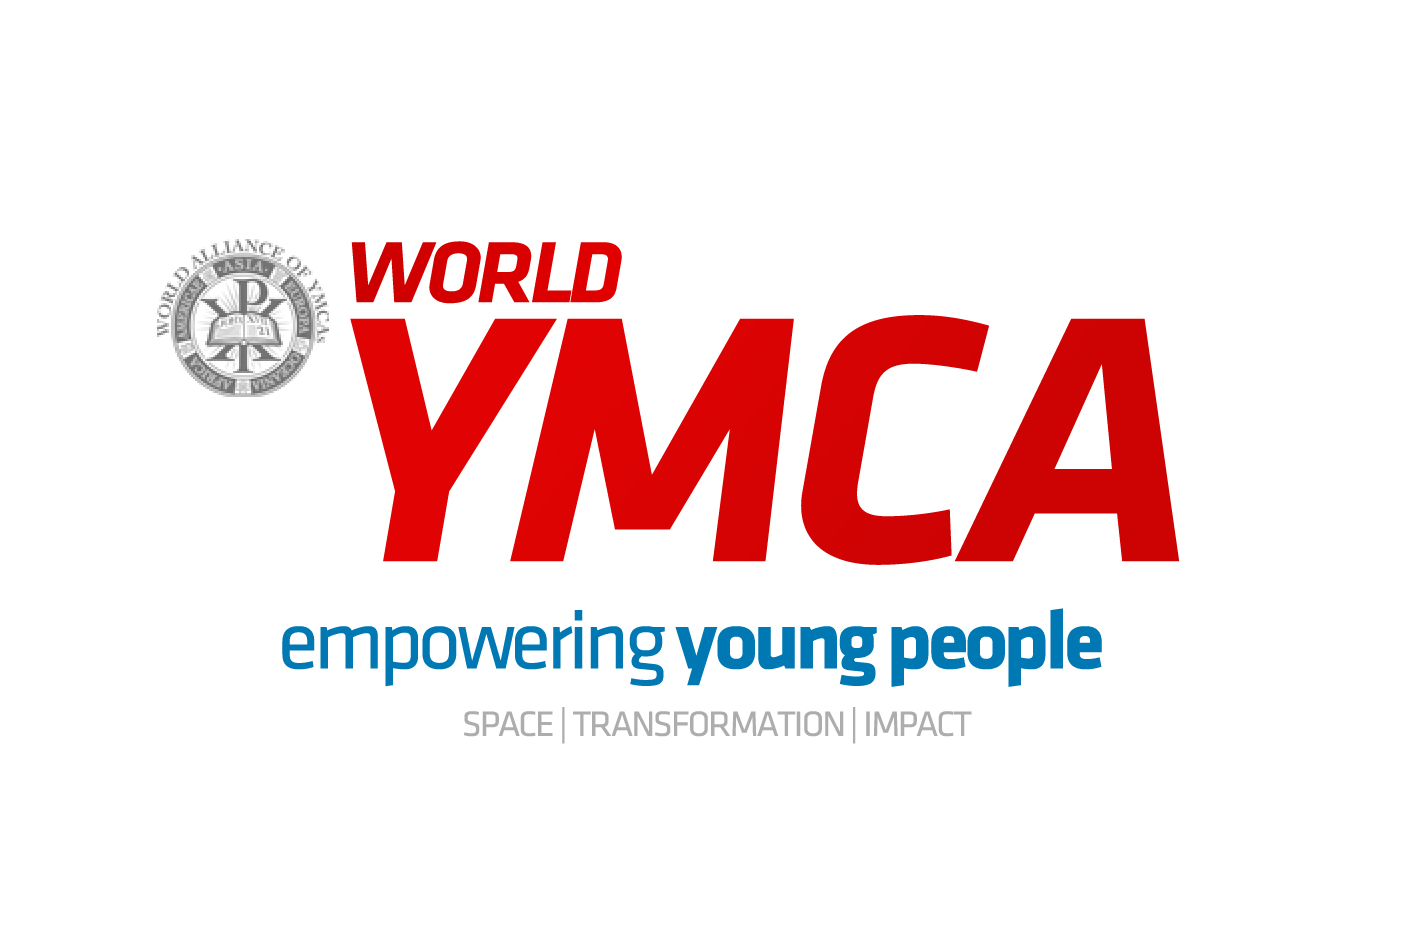 World ymca logo (2)